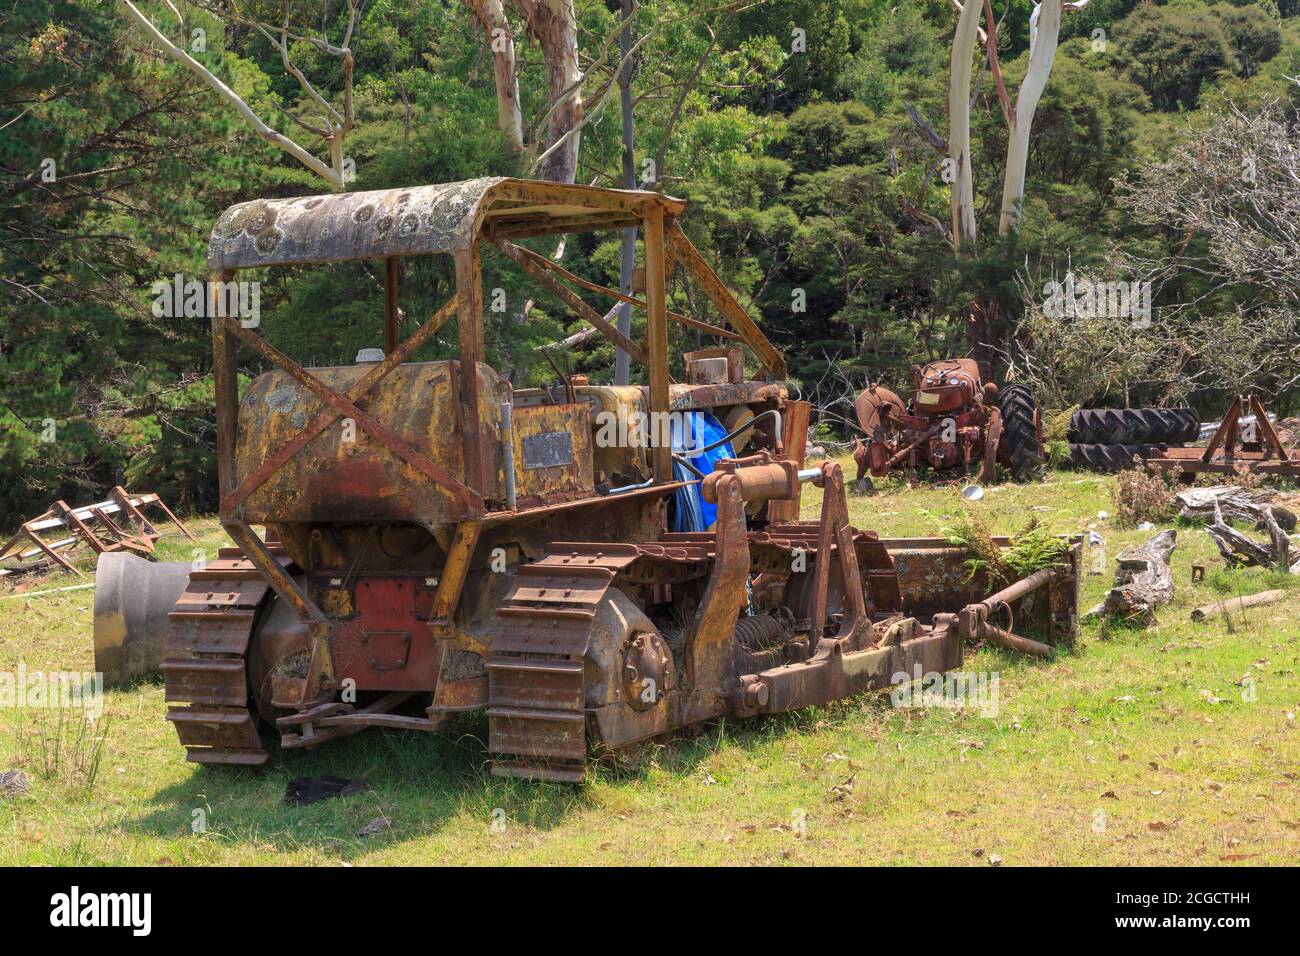 Un vieux bulldozer rouillé, abandonné sur une ferme avec d'autres machines Banque D'Images